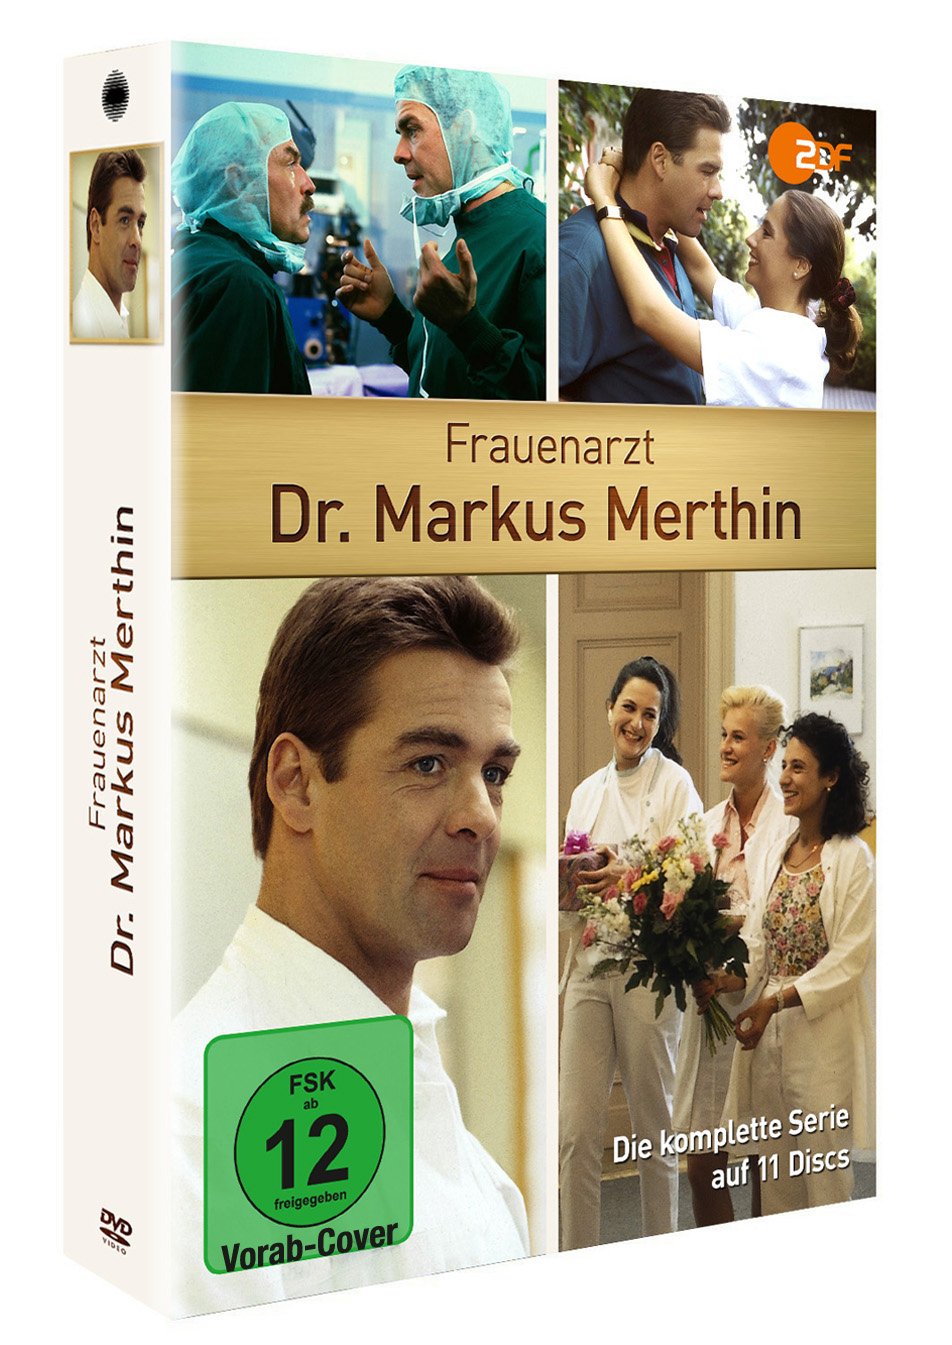 Frauenarzt Dr. Markus Merthin - Die komplette Serie auf 11 Discs